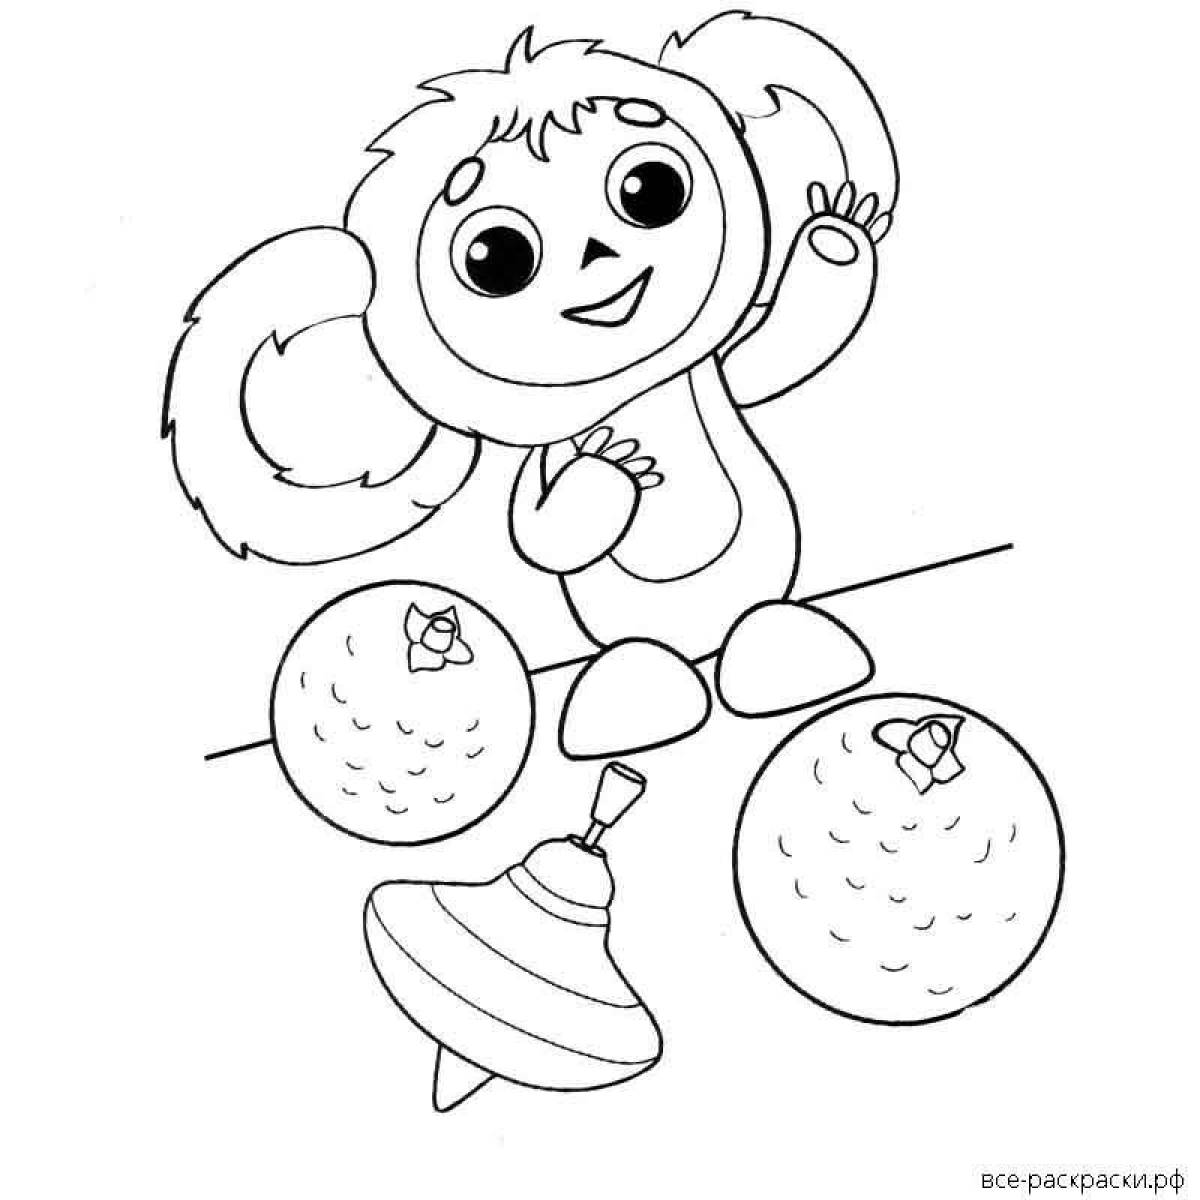 Delightful Cheburashka coloring book for kids